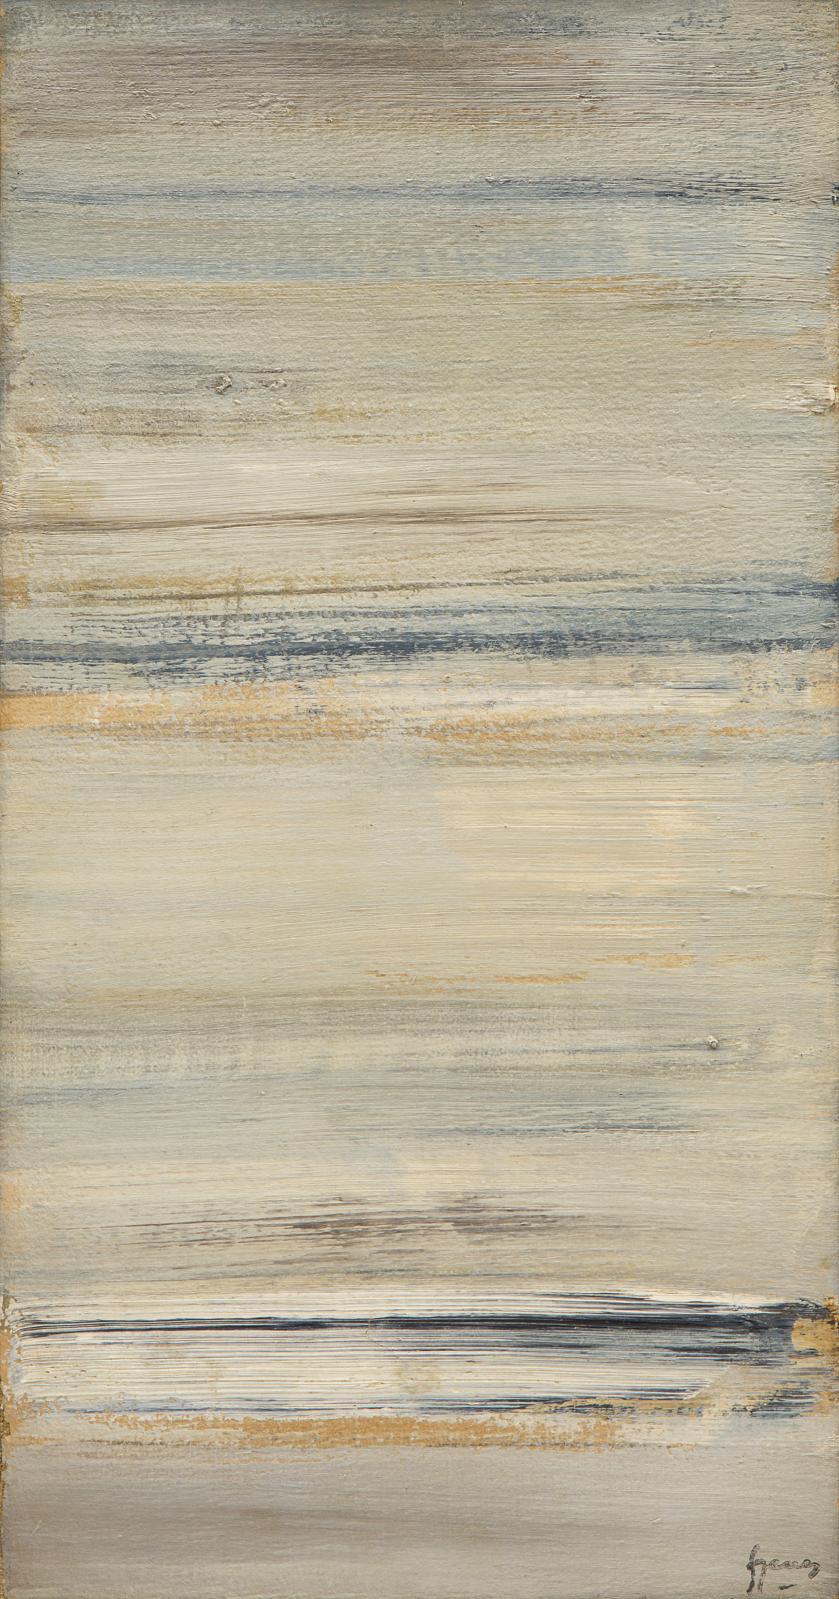 Arpad Szenes (1897-1985), Mer, étude, vers 1978, huile sur papier marouflé sur toile, 35,6 x 18 cm. Estimation : 5 000/6 000 € 